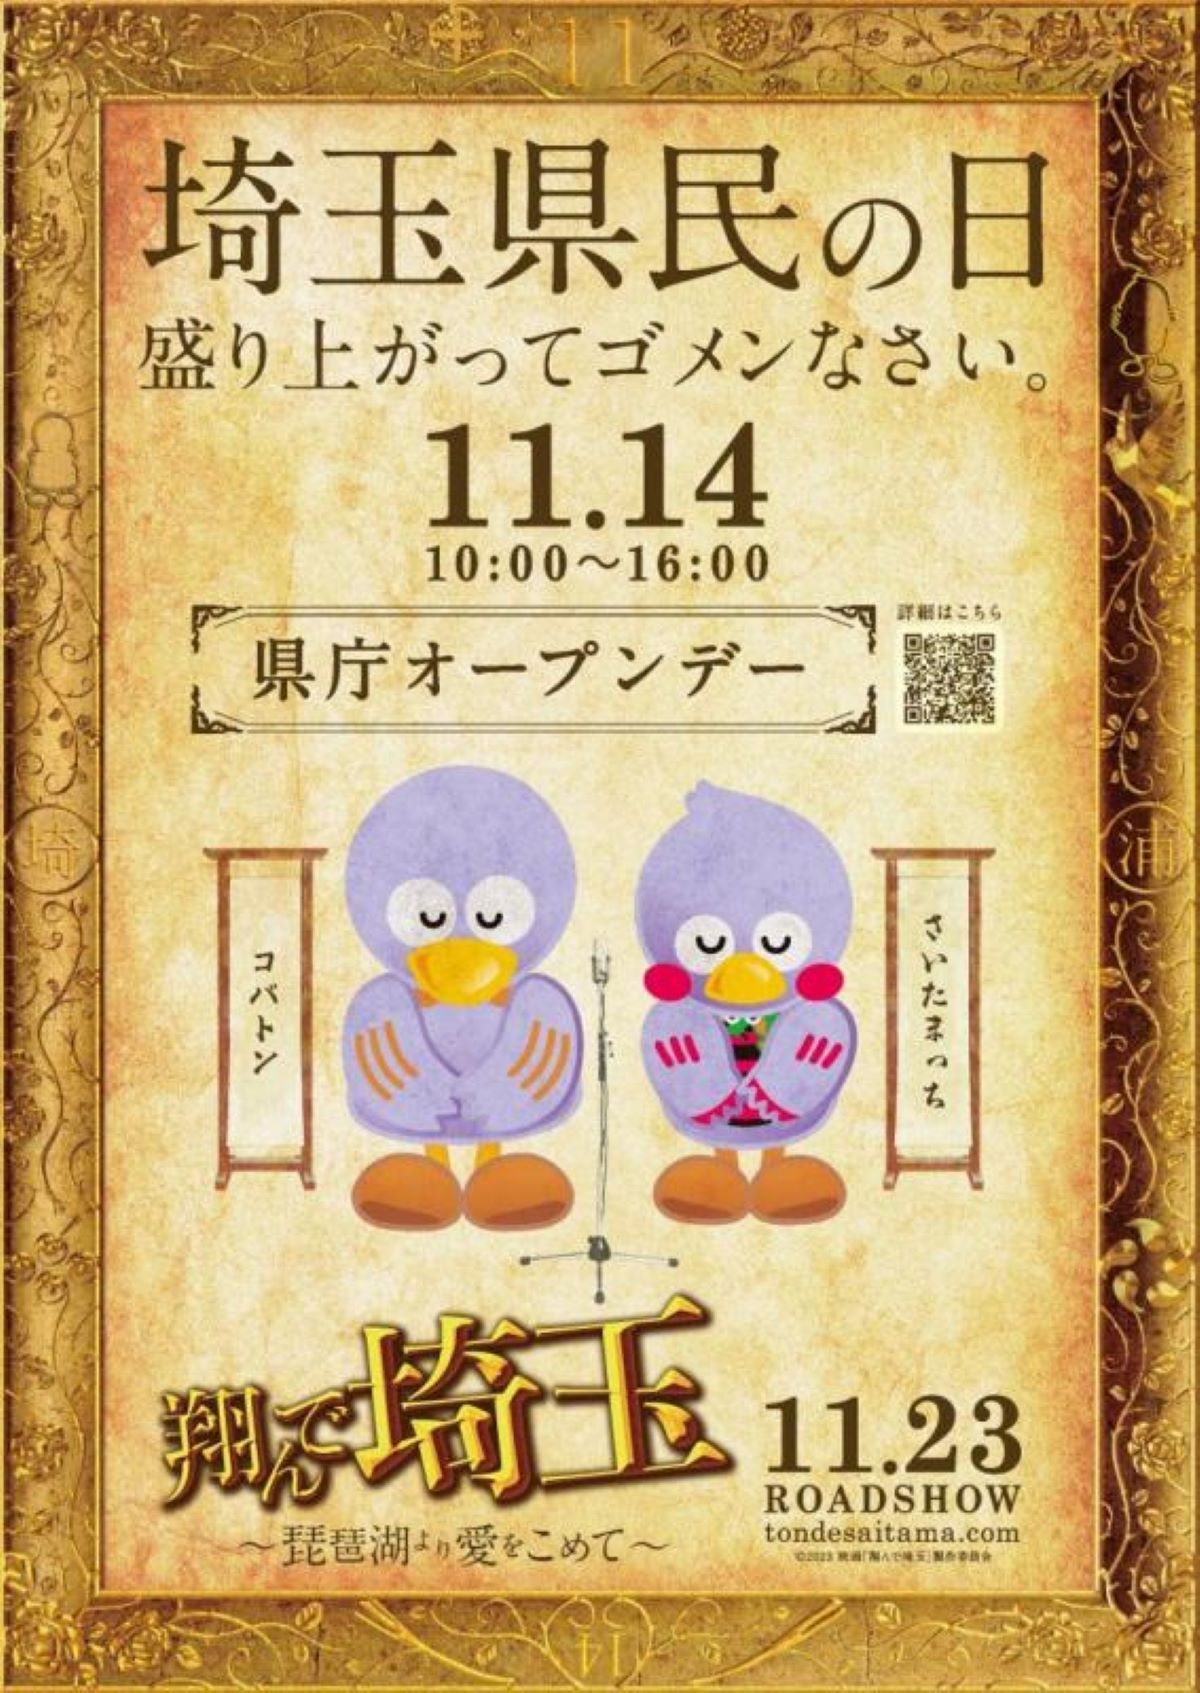 『翔んで埼玉2』11月14日の埼玉県民の日スペシャルステージに、GACKT・二階堂ふみがゲスト出演